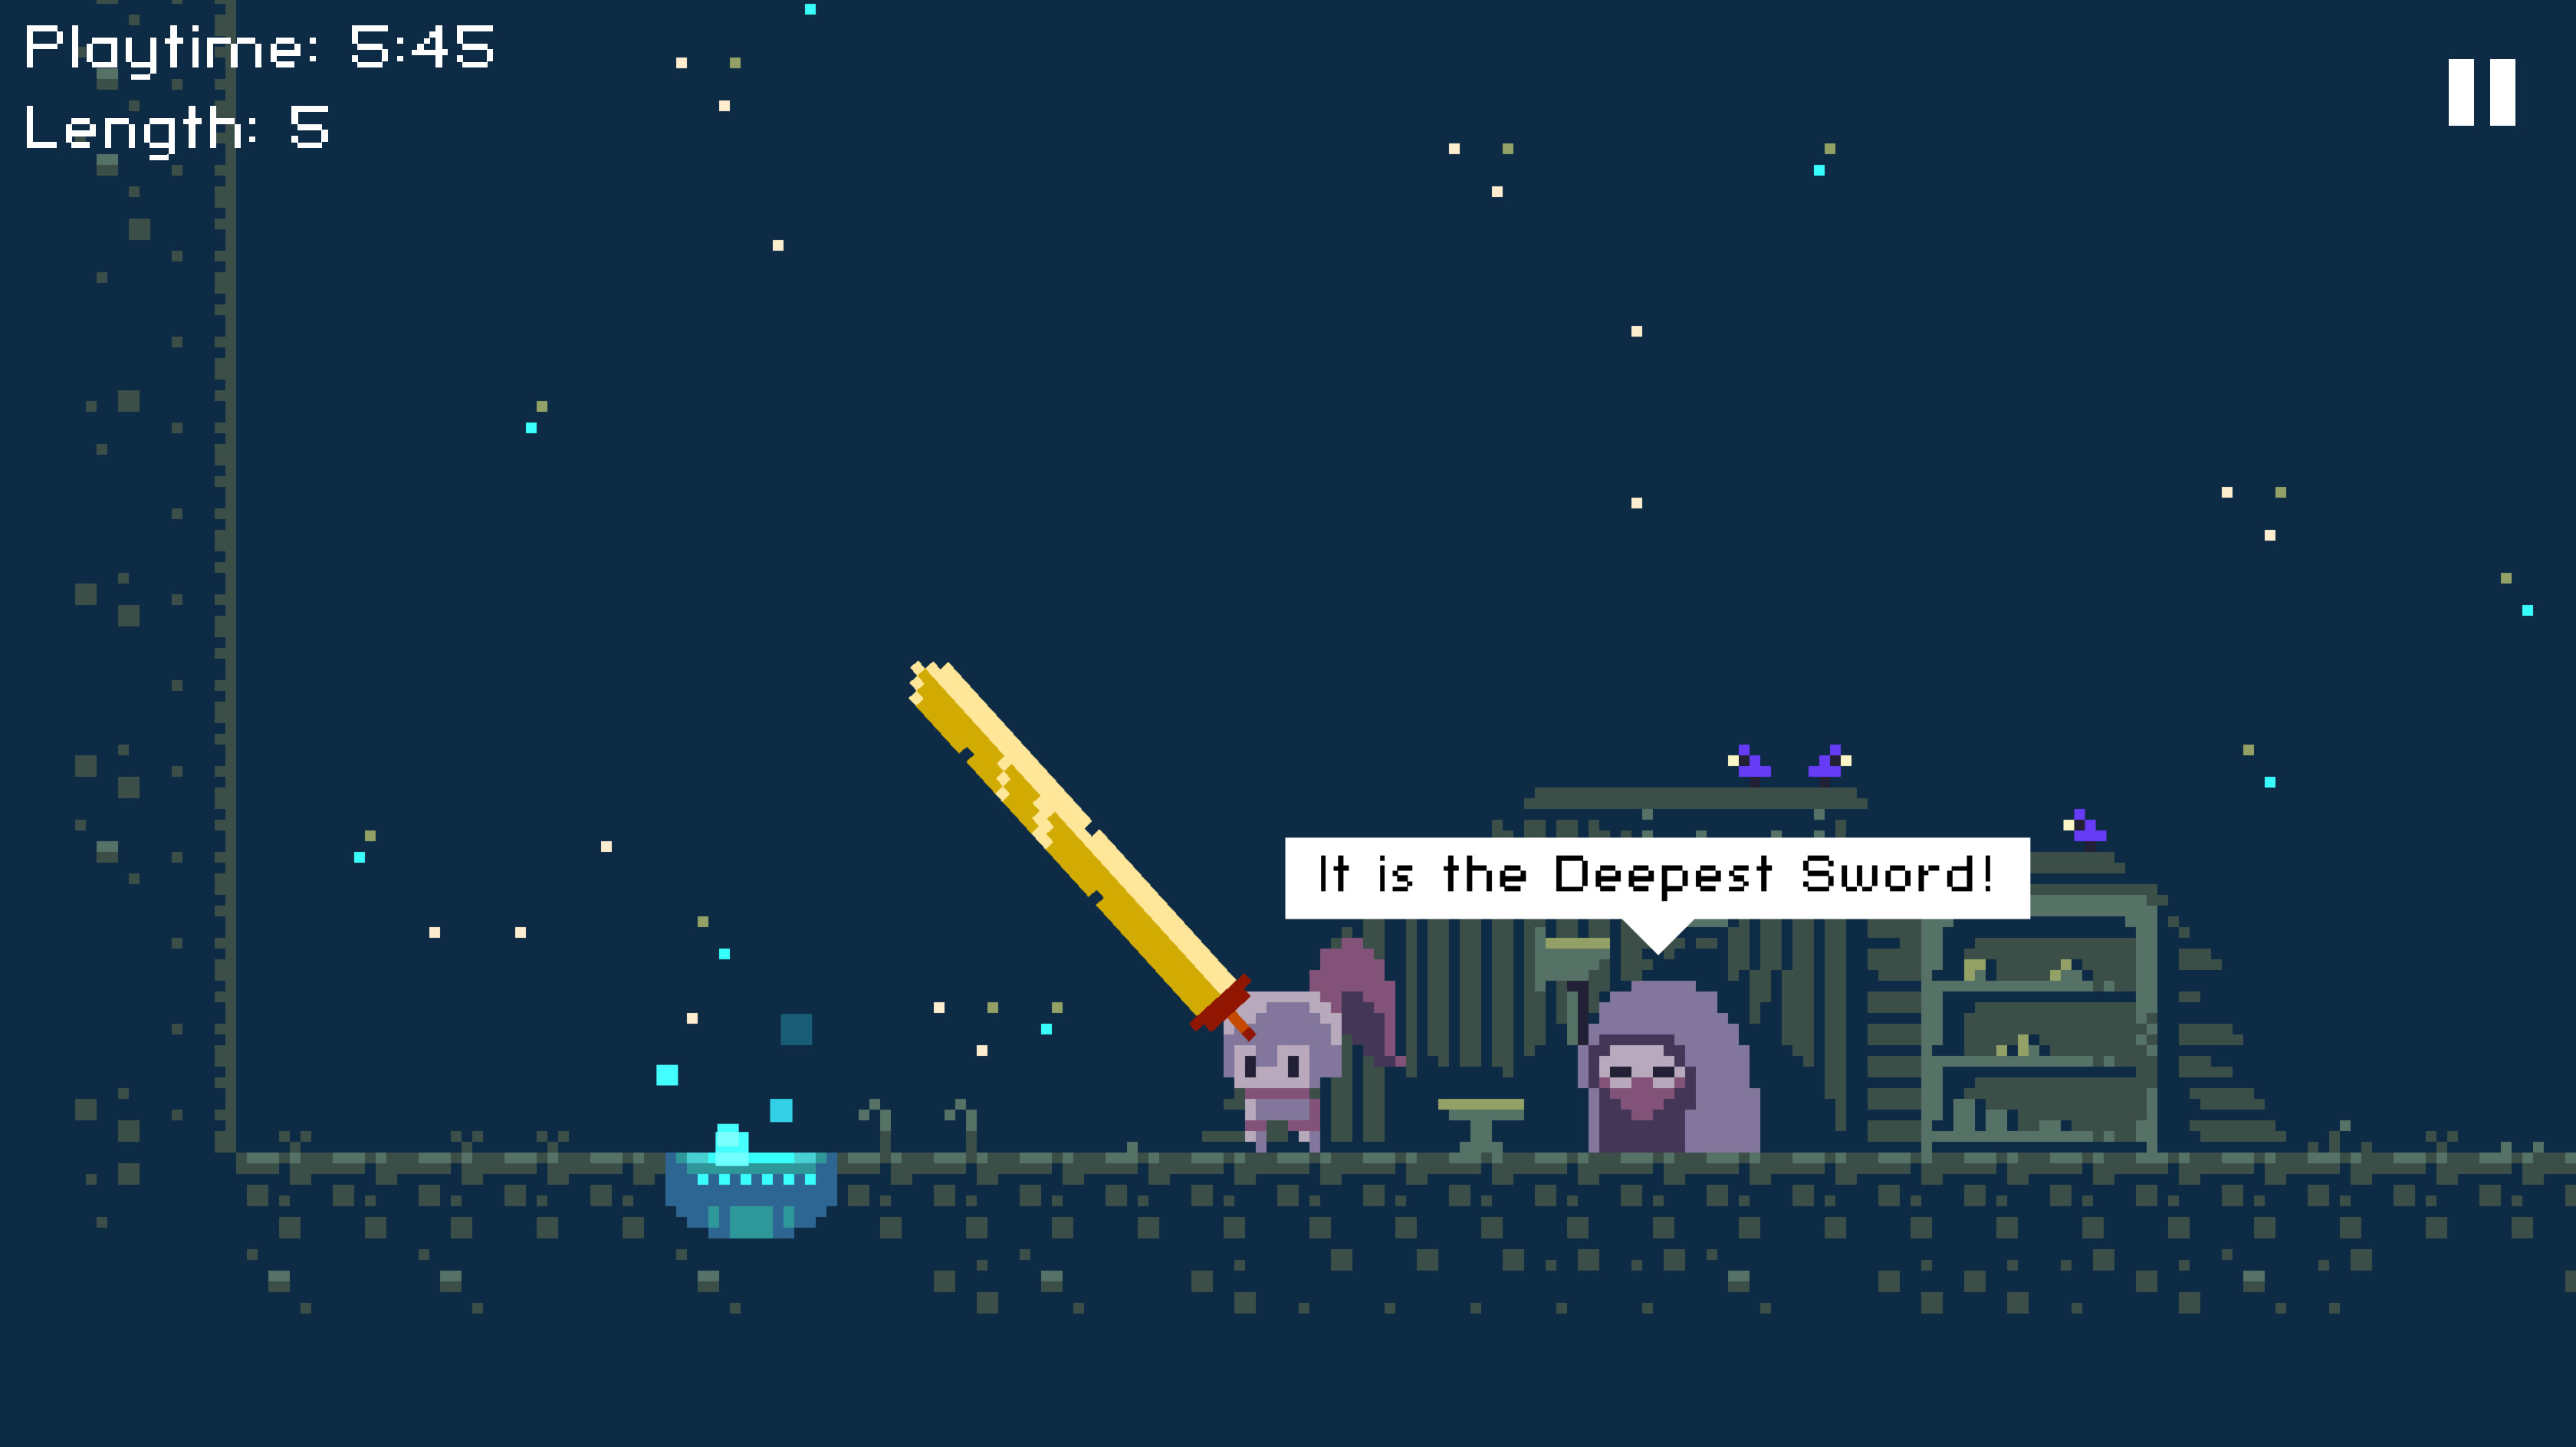 Deepest Sword screenshot